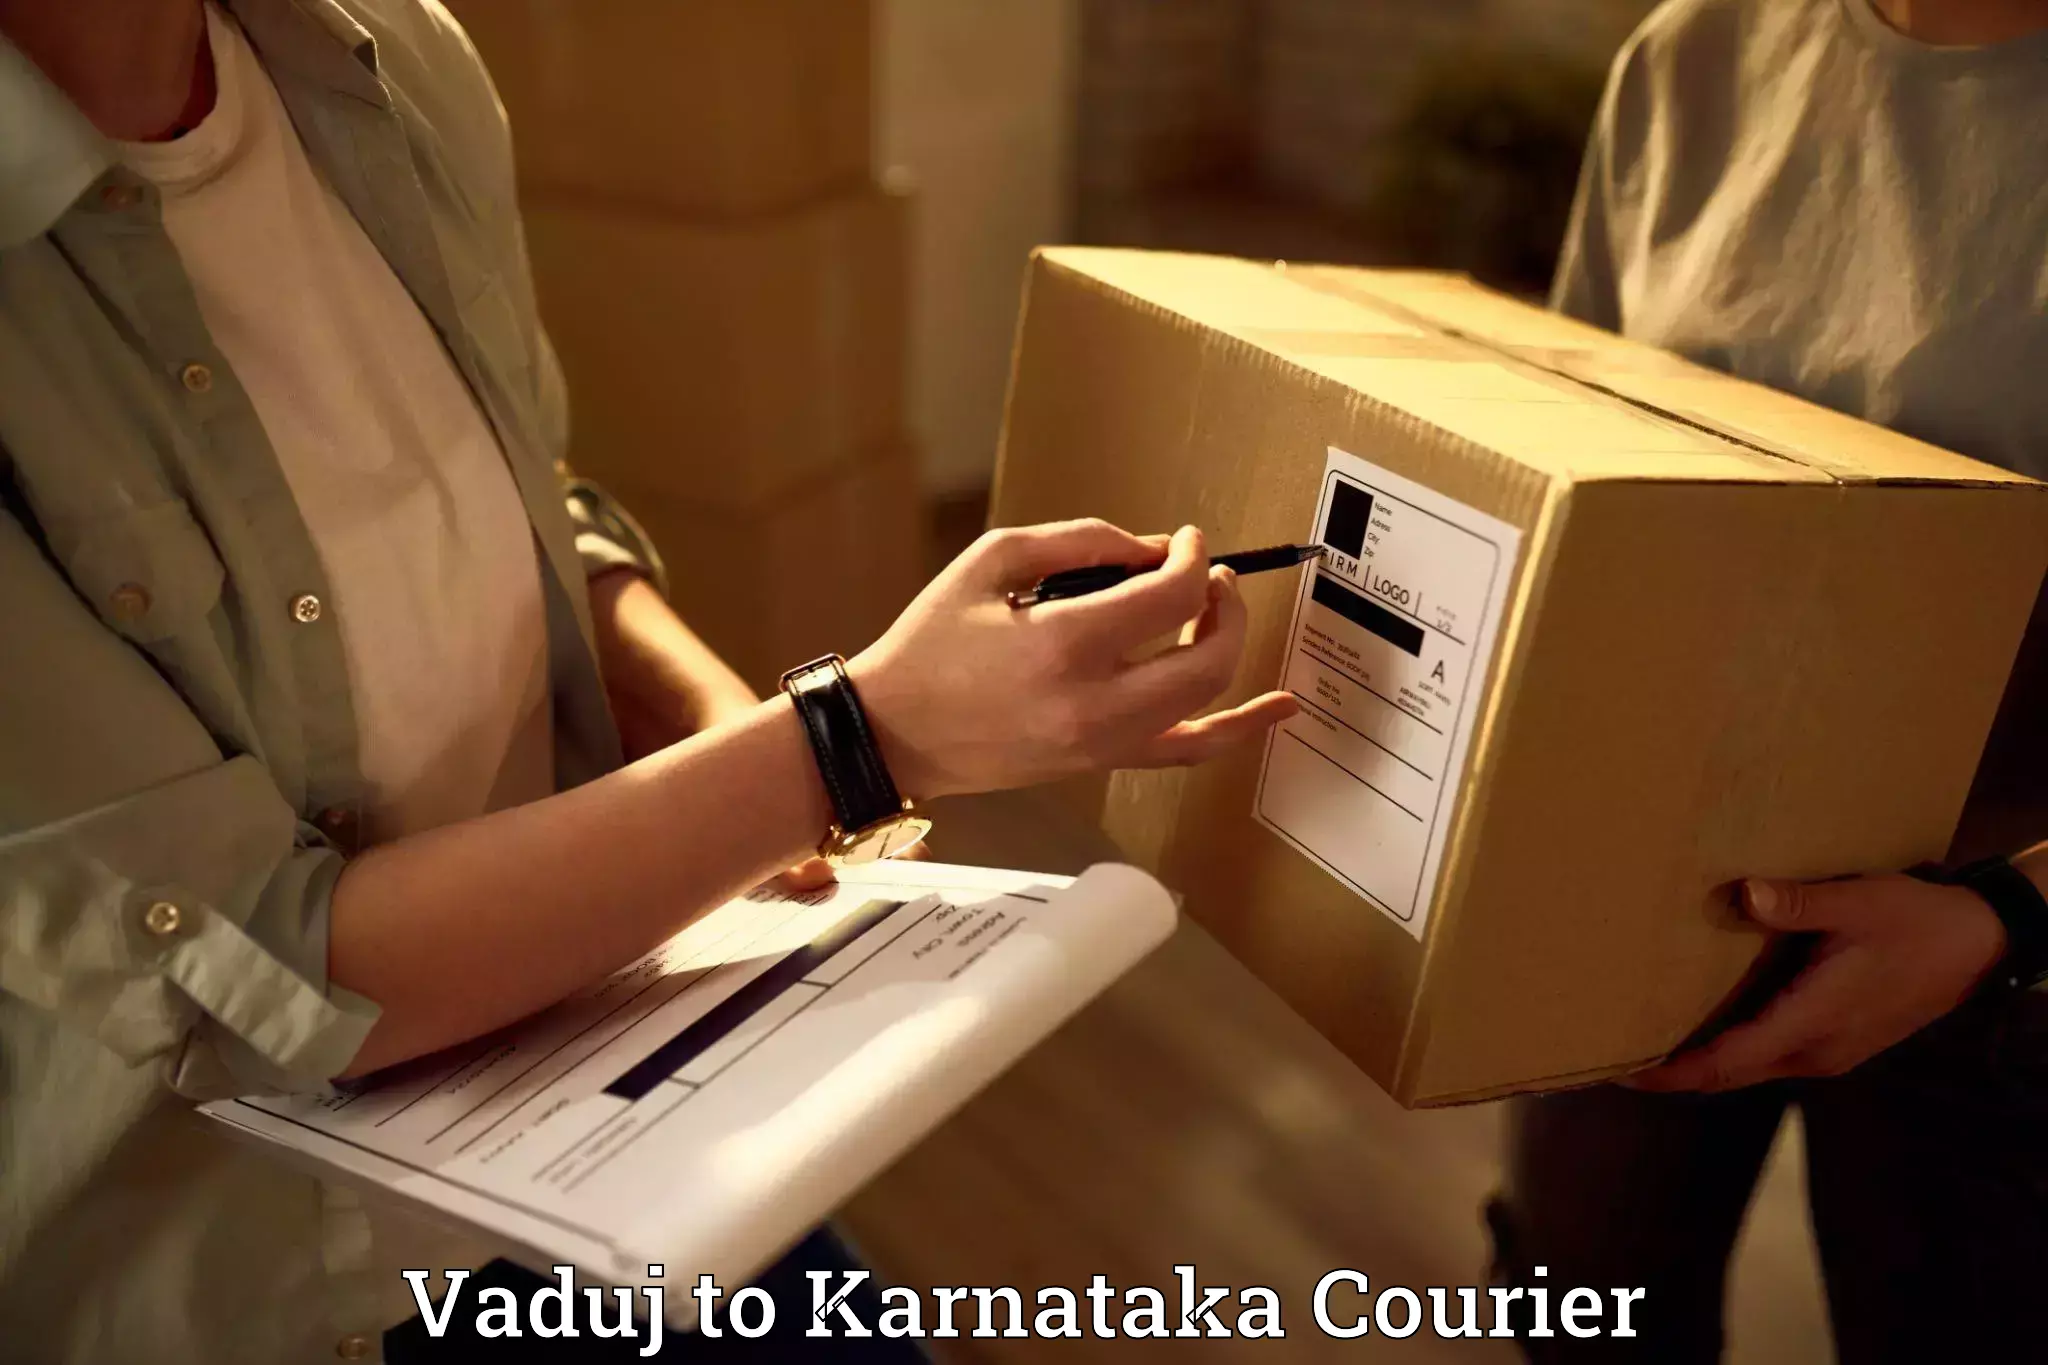 Reliable movers Vaduj to Karnataka